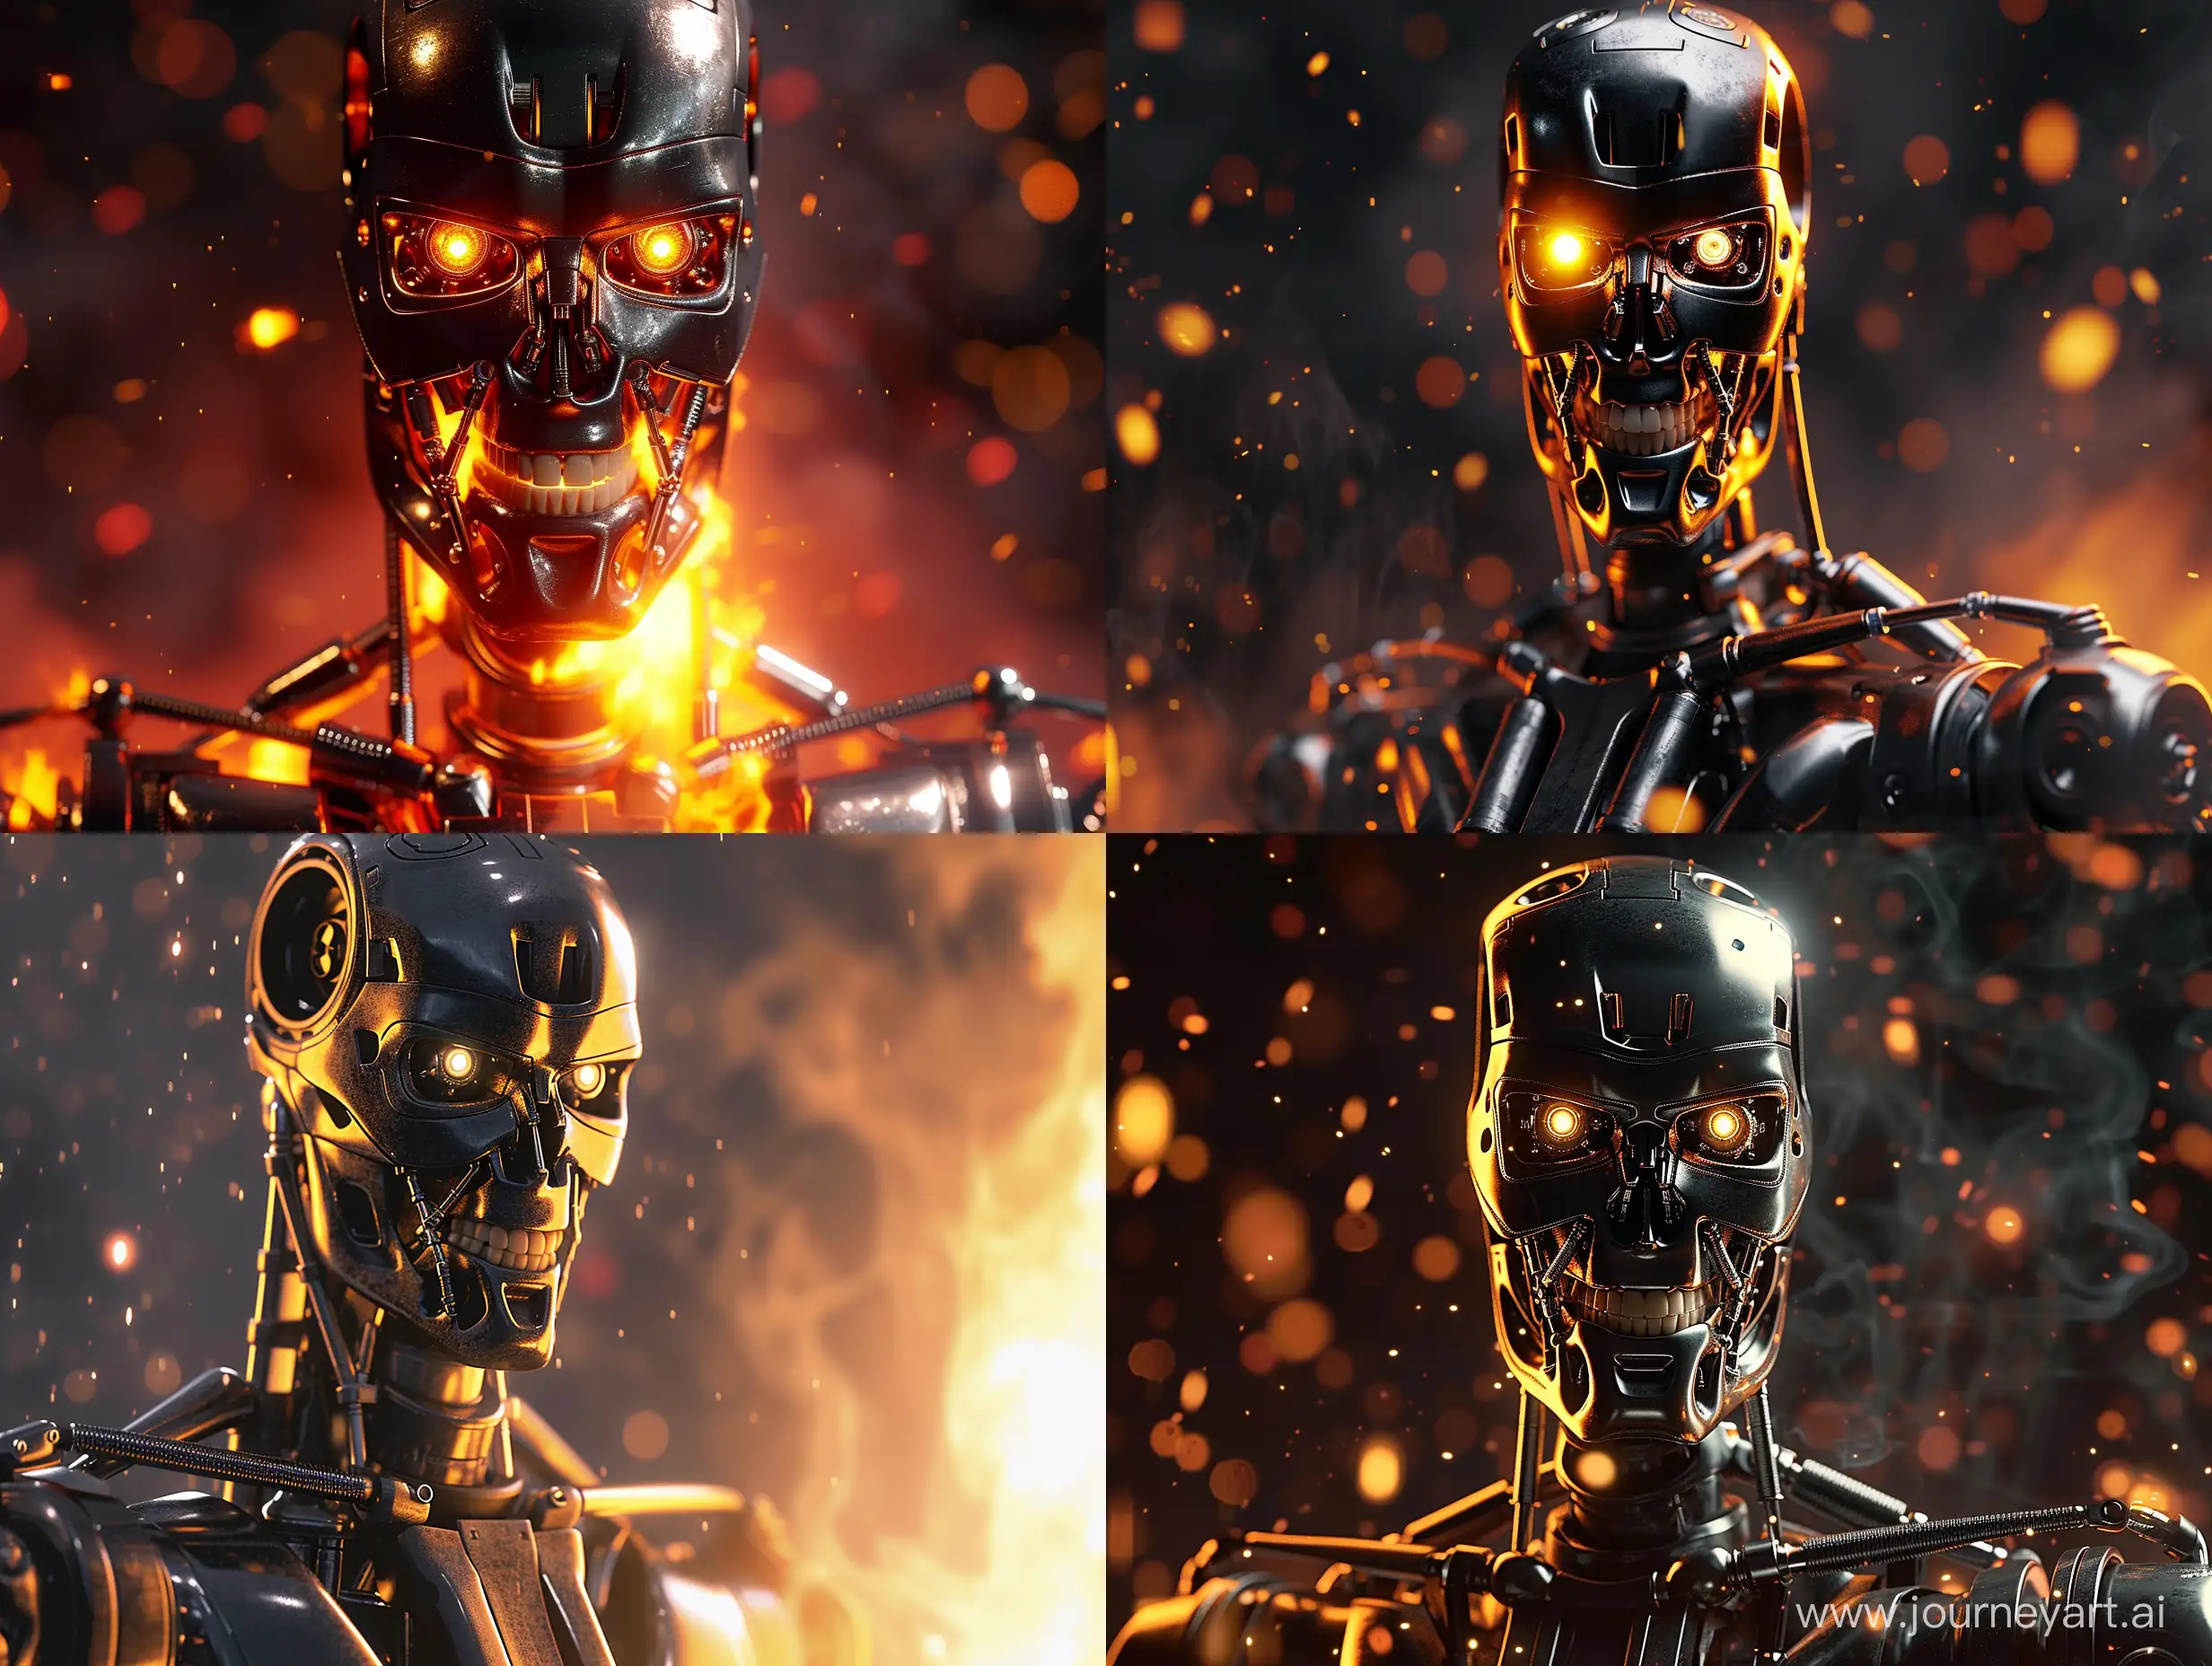 Робот терминатор из одноименного фильма , огонь, фотореализм, крупный план, блеск, отражения, дым, свет, темная тема
